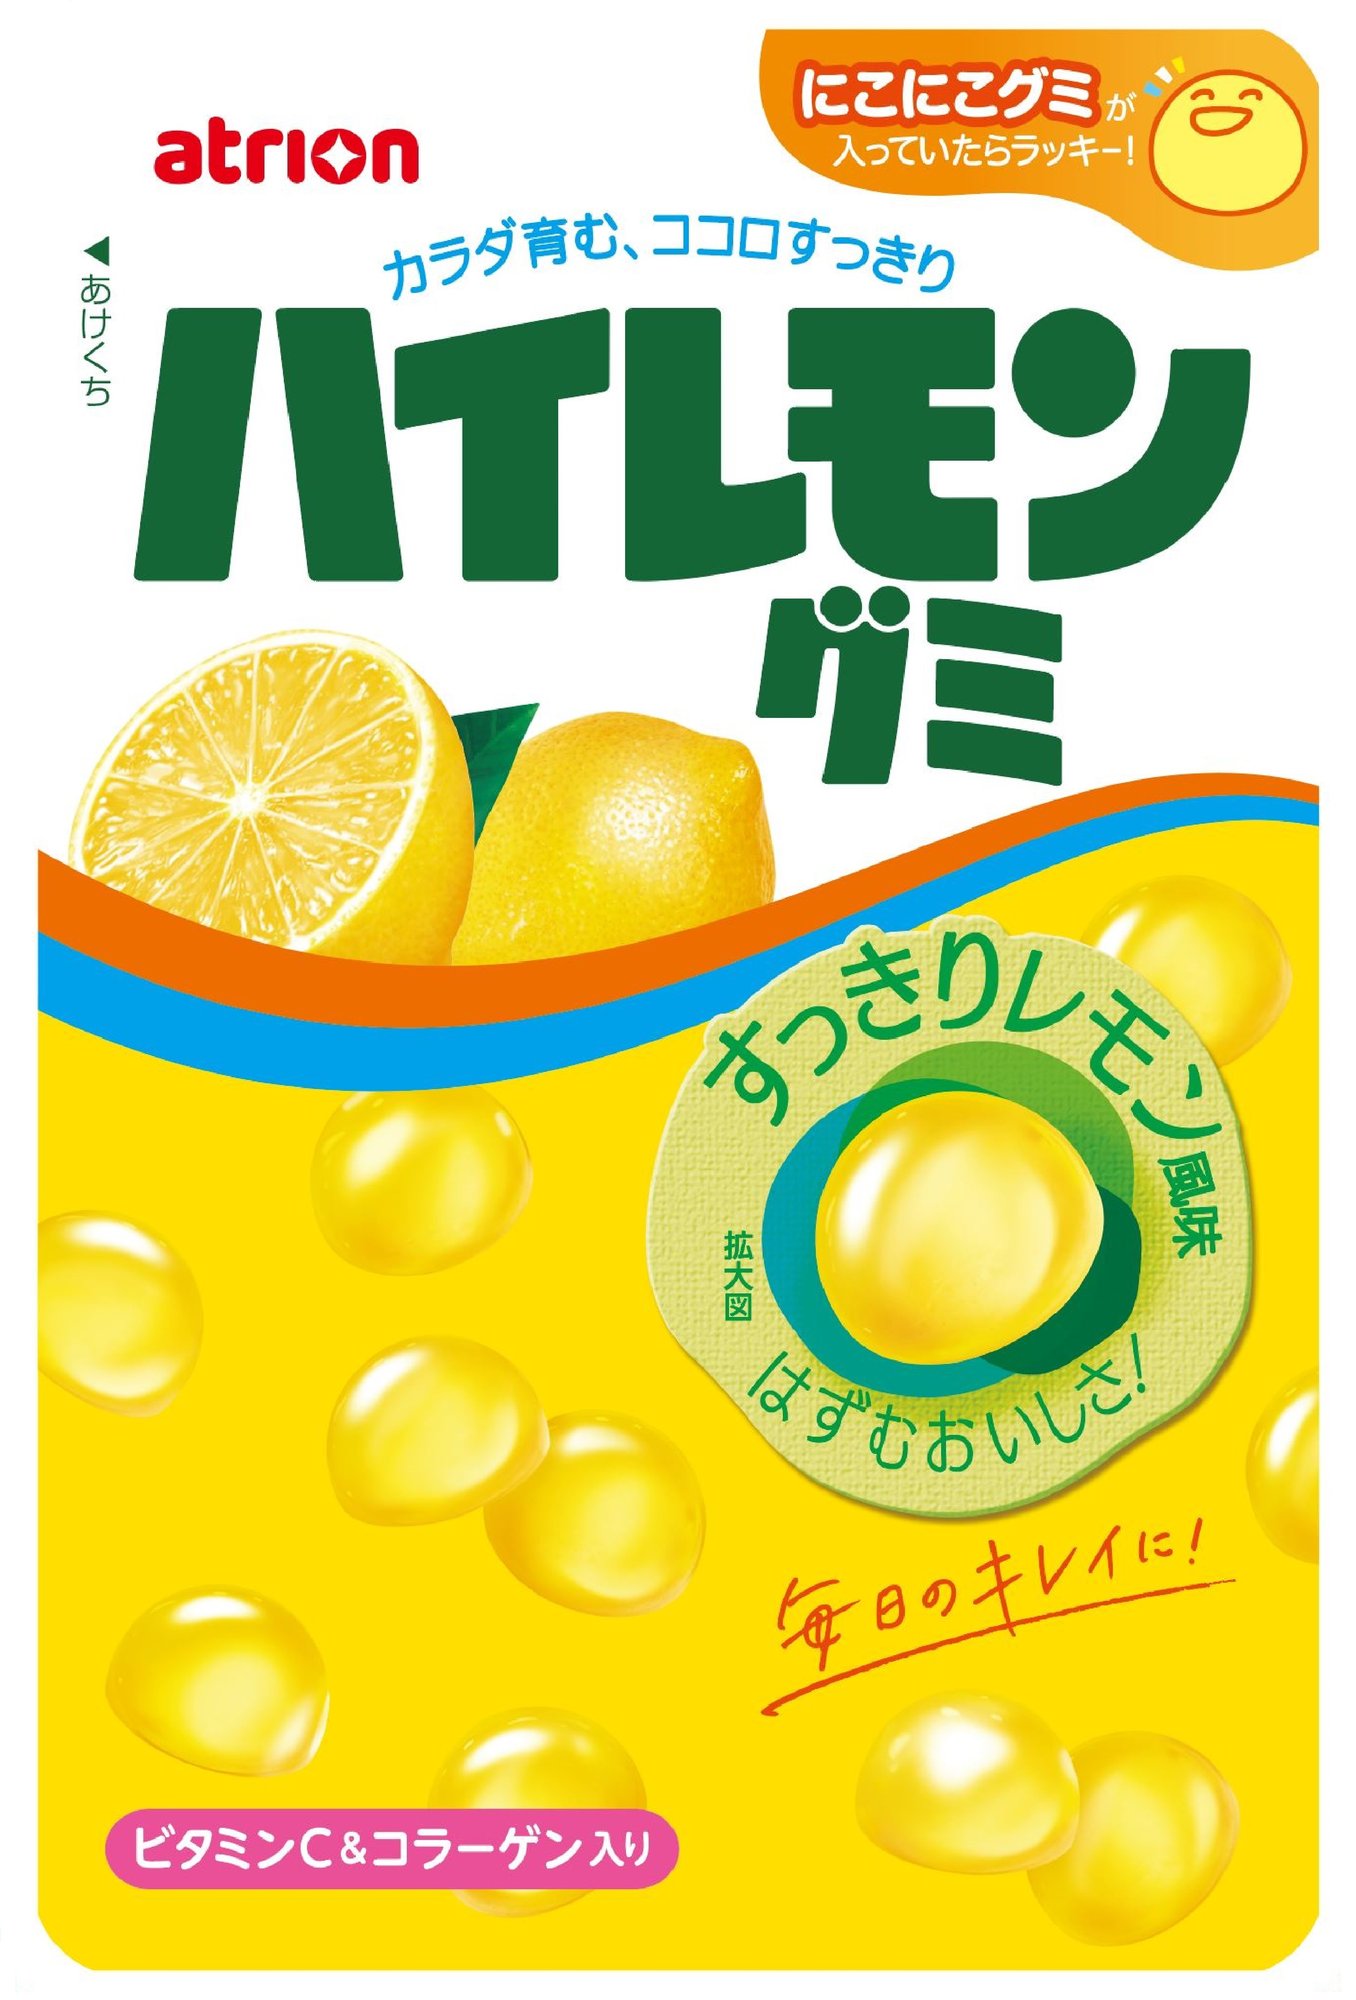 【パウチ表】51Gハイレモングミ